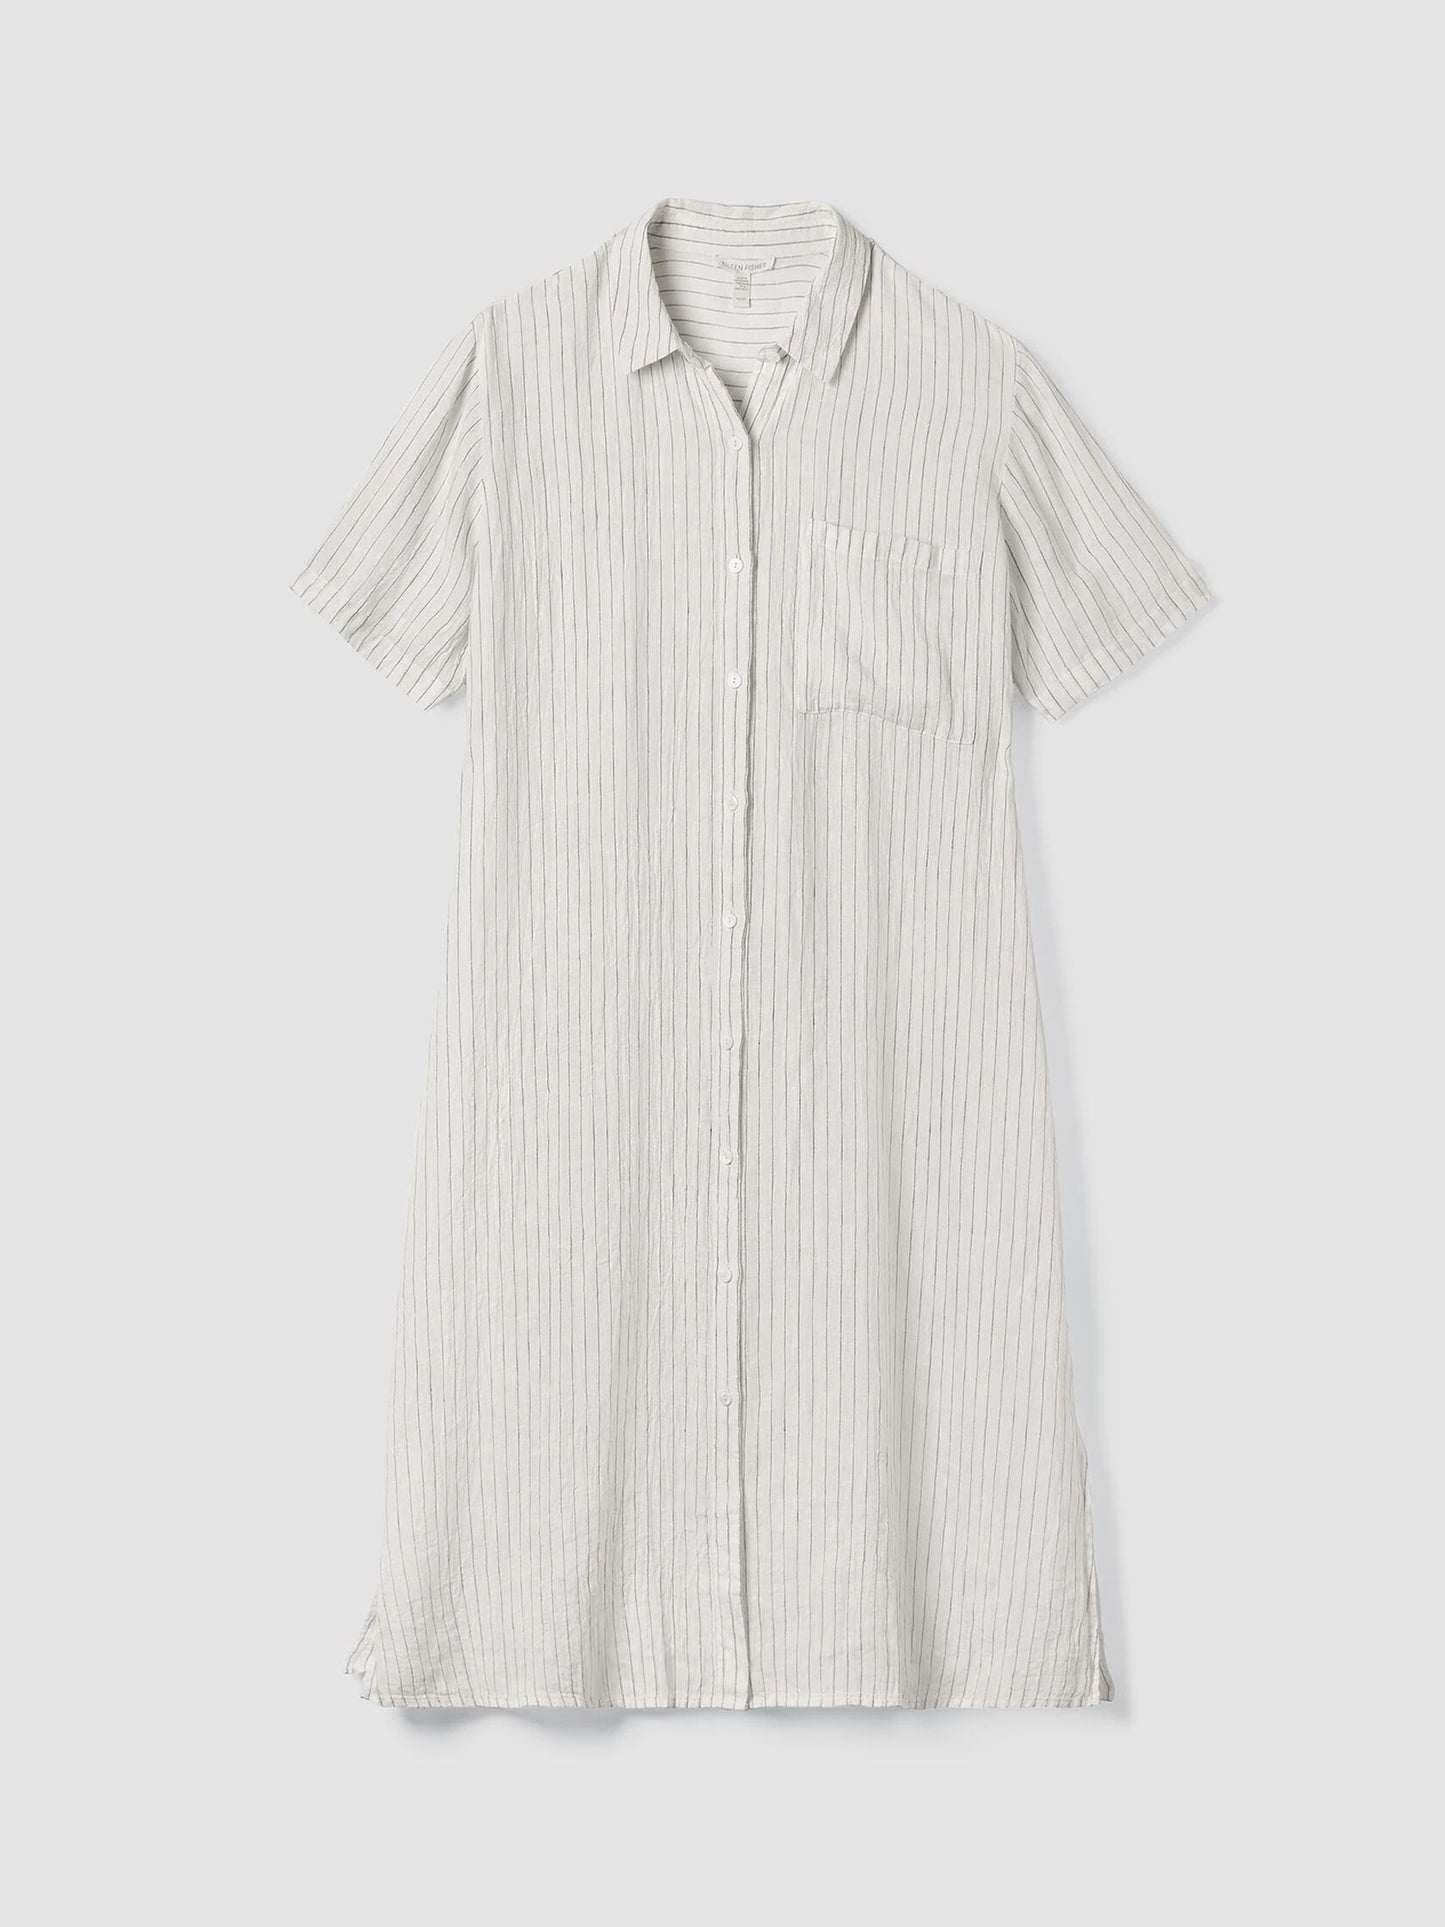 Eileen Fisher Puckered Organic Linen Shirt Dress